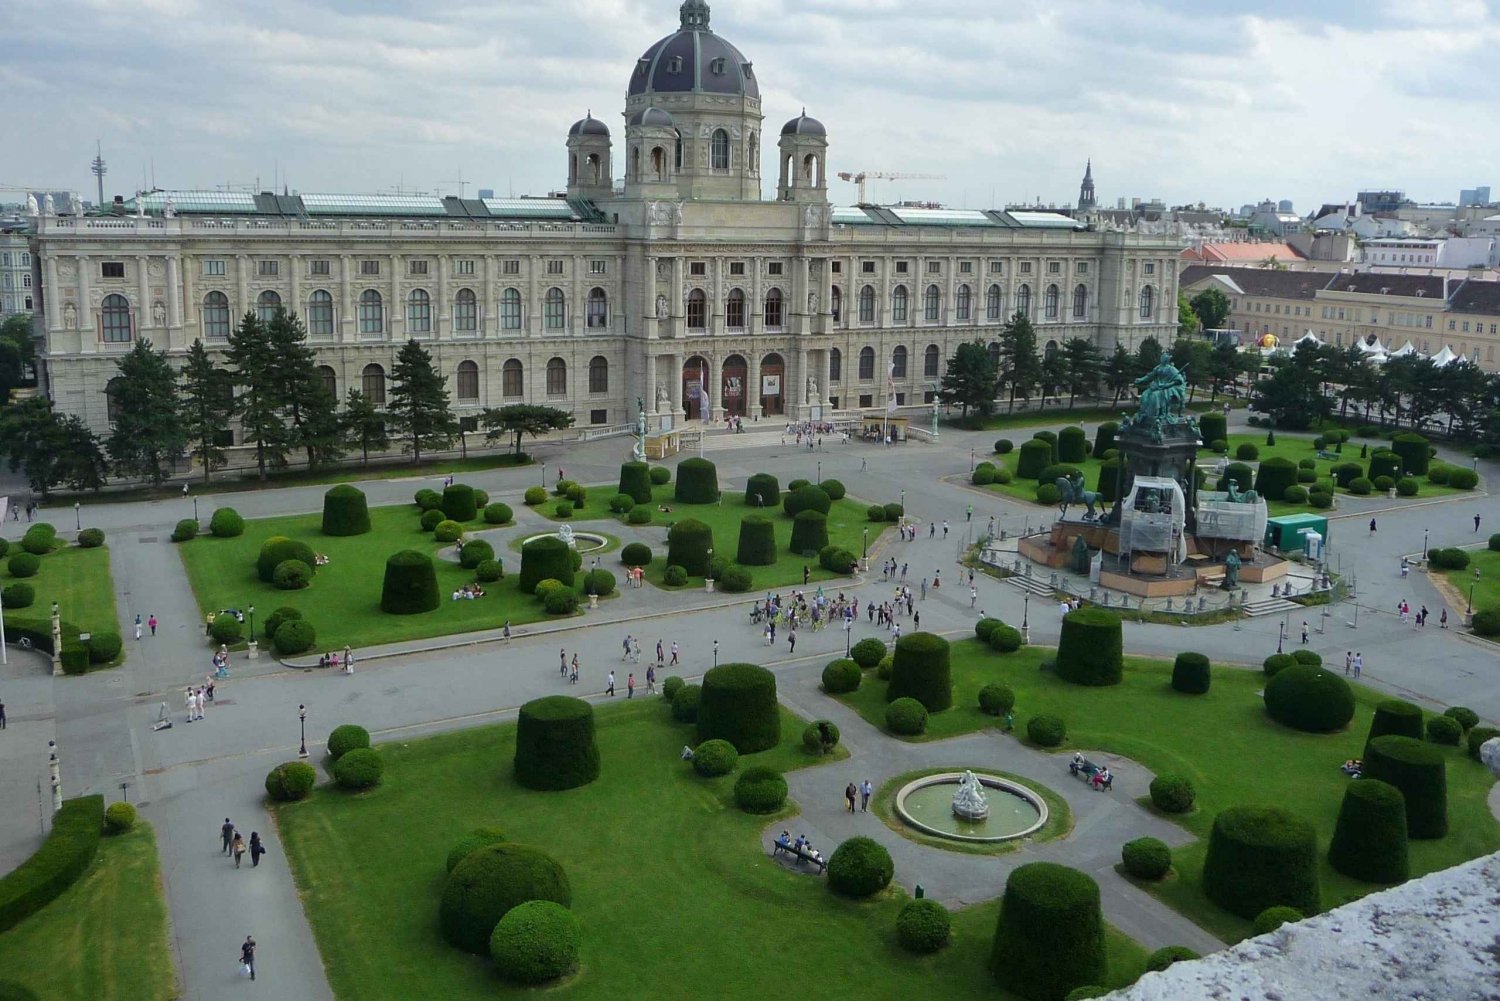 Wien til fots: Oppdag de 10 største severdighetene